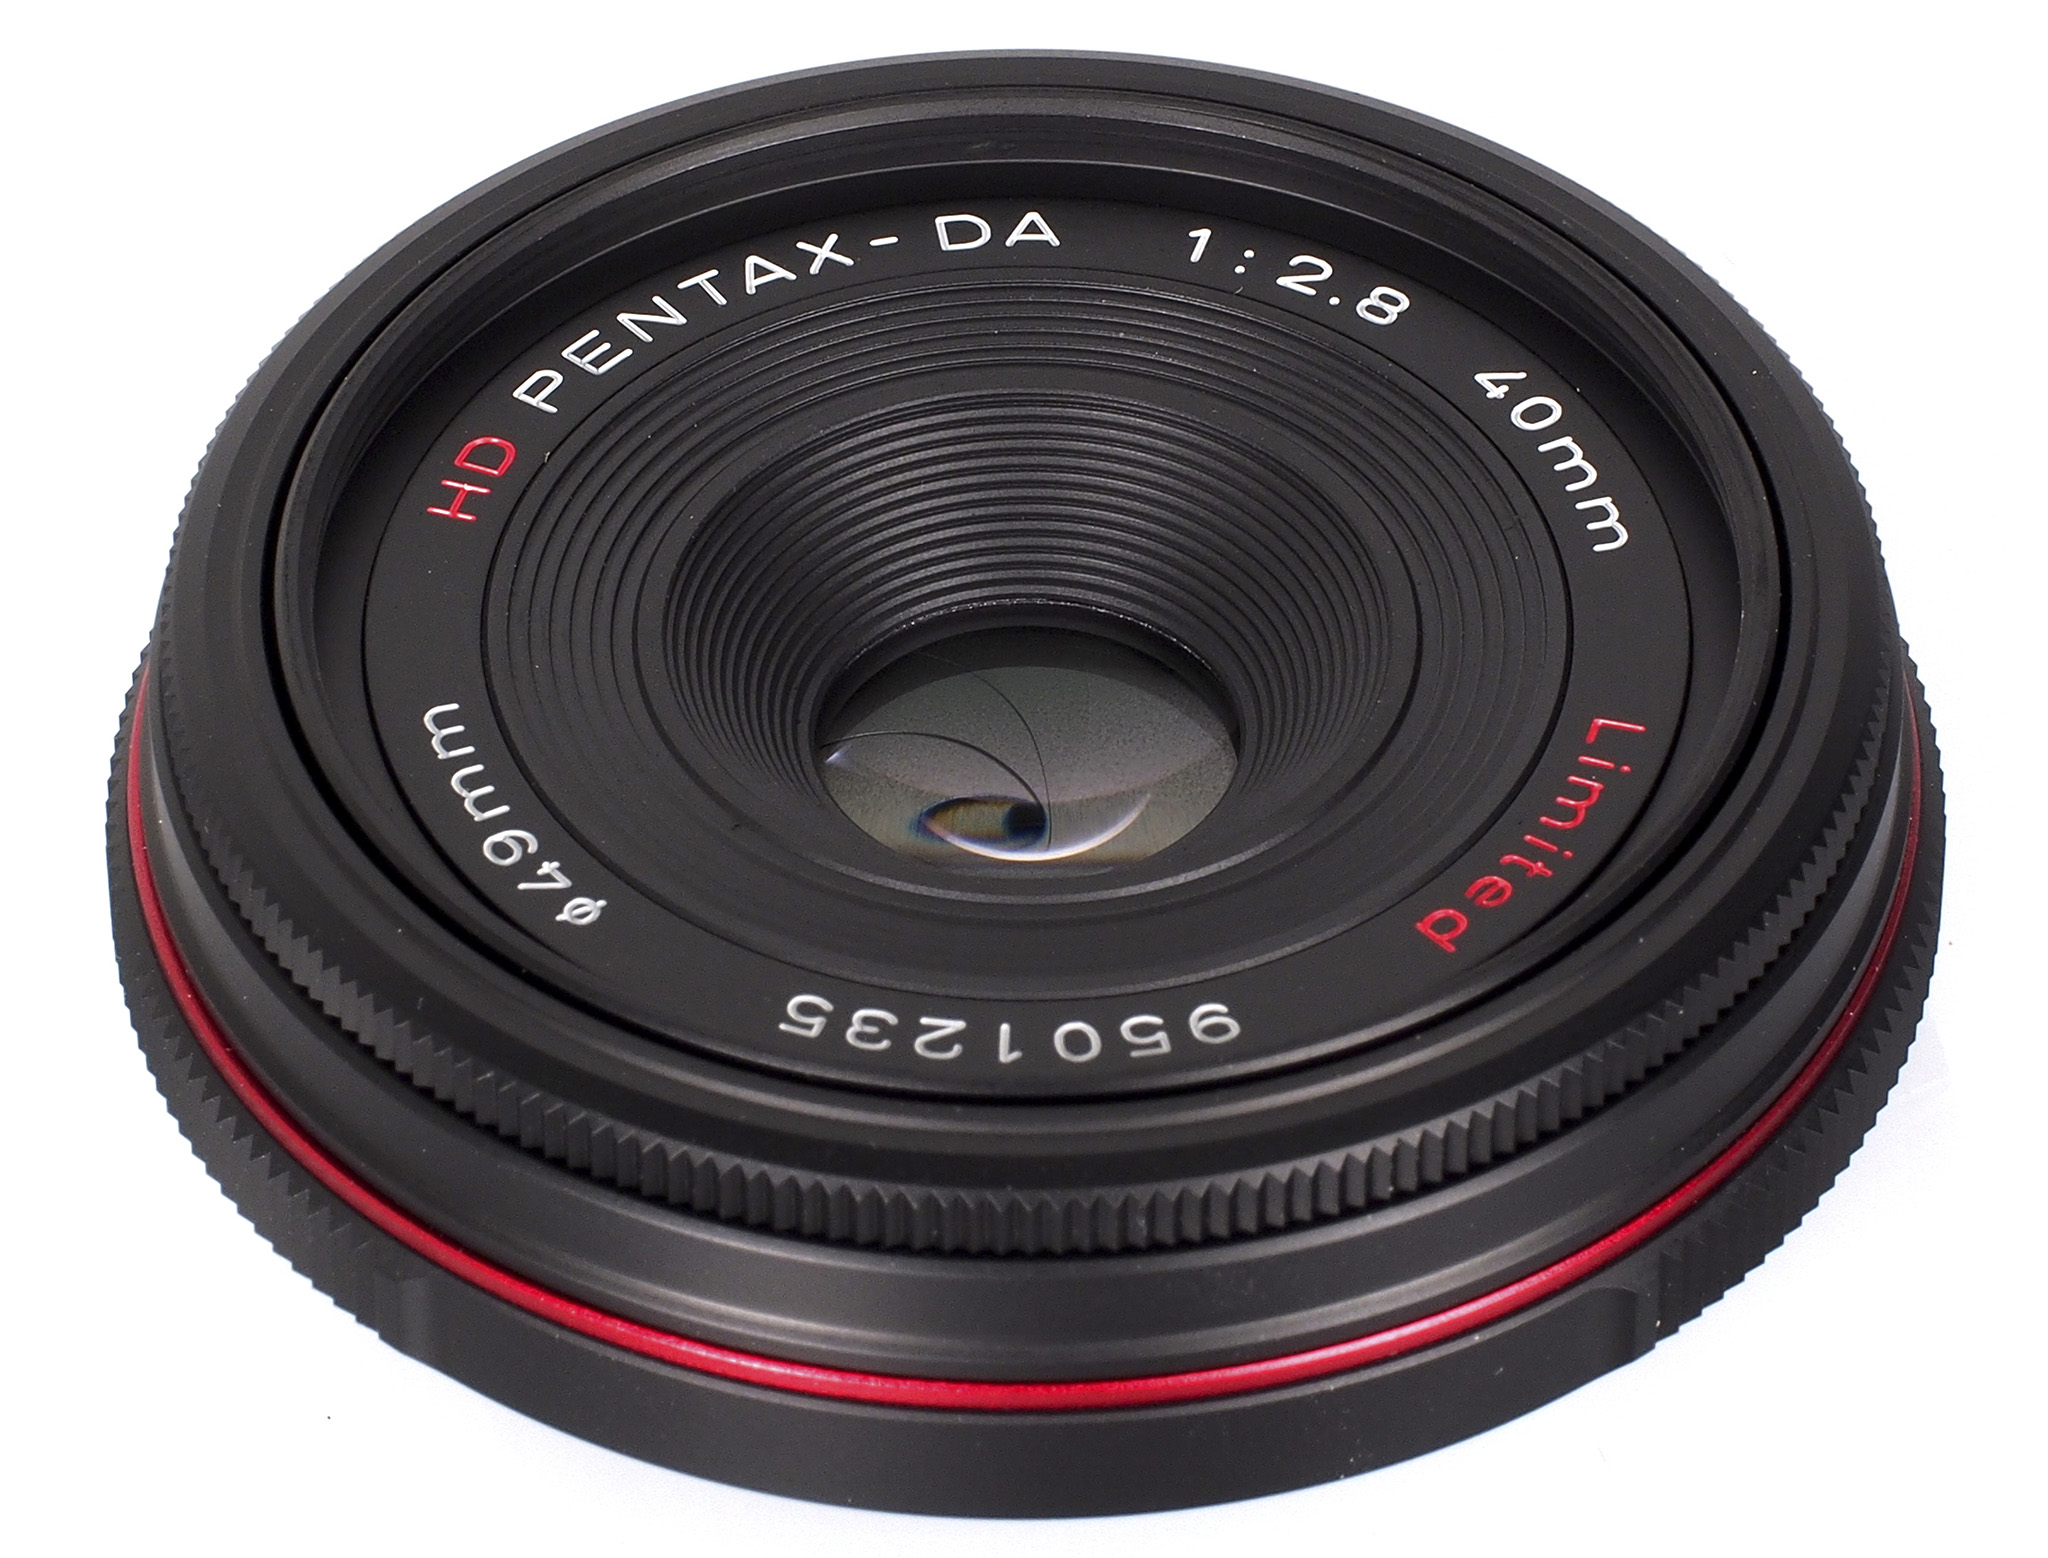 highres-HD-Pentax-DA-40mm-f2-8-limited-lens-black-4_1382093470.jpg